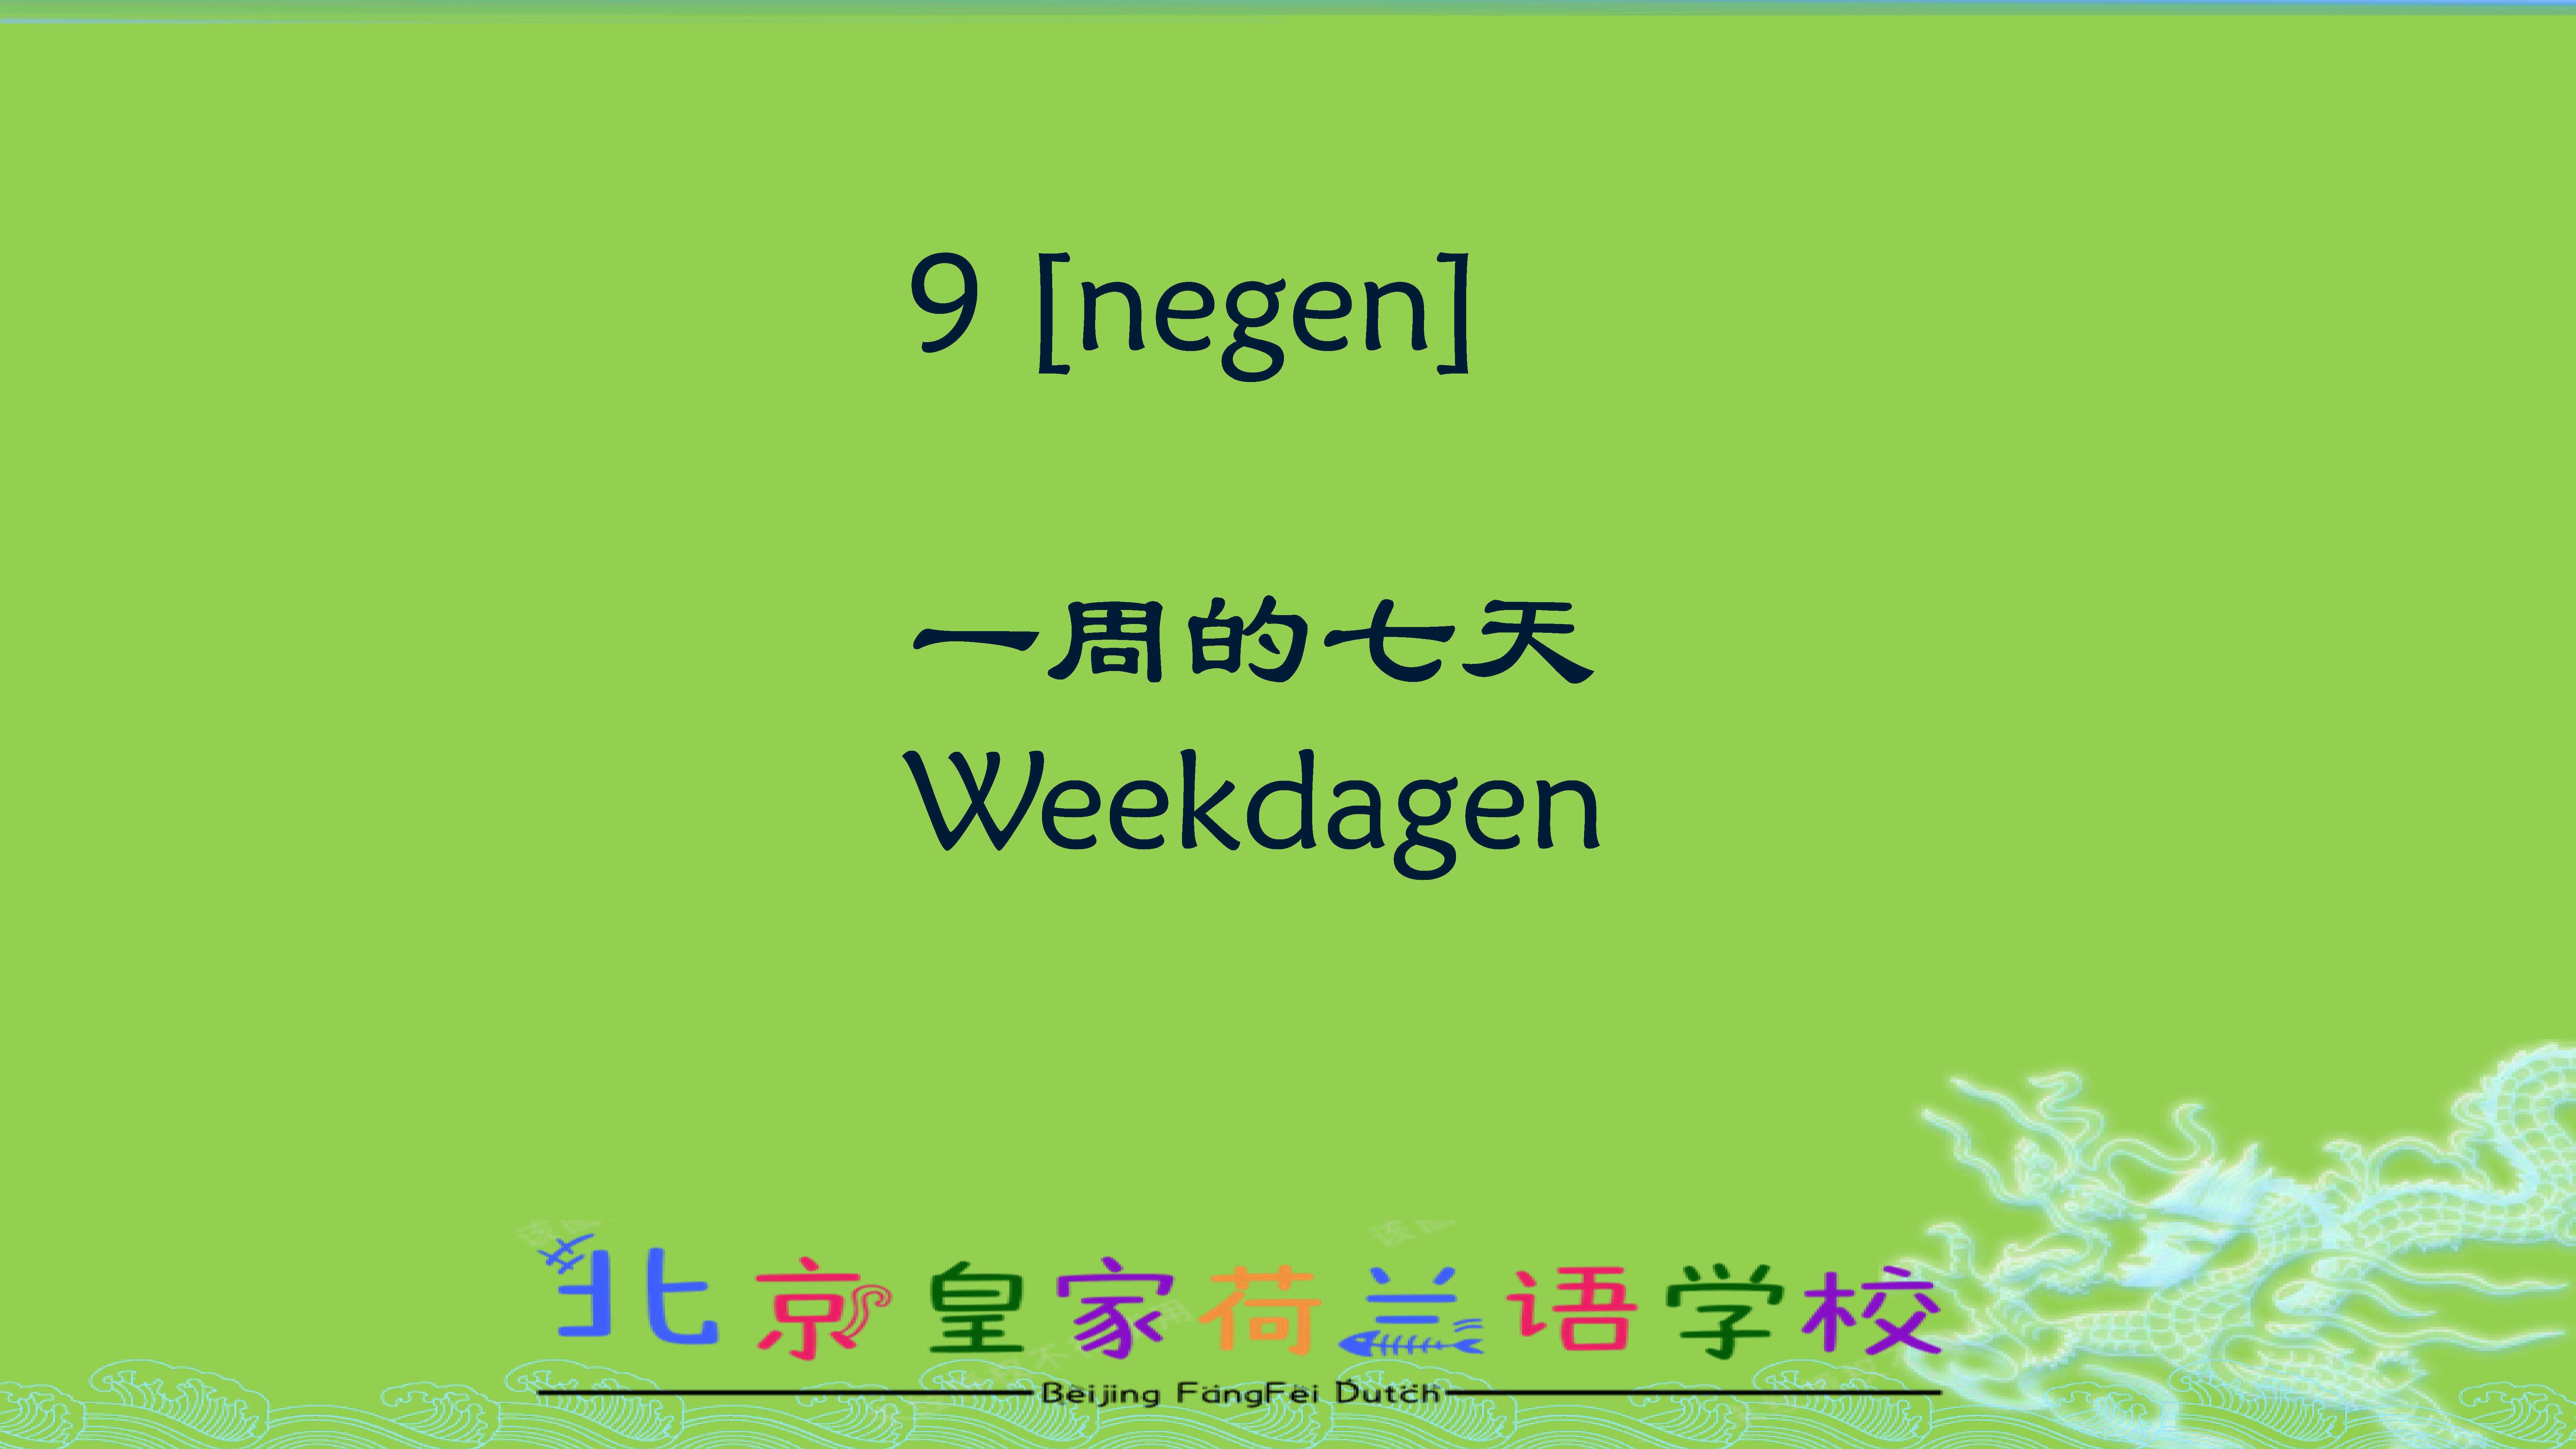 荷兰语视频课程les9weekdagen用荷兰语来说一周的七天